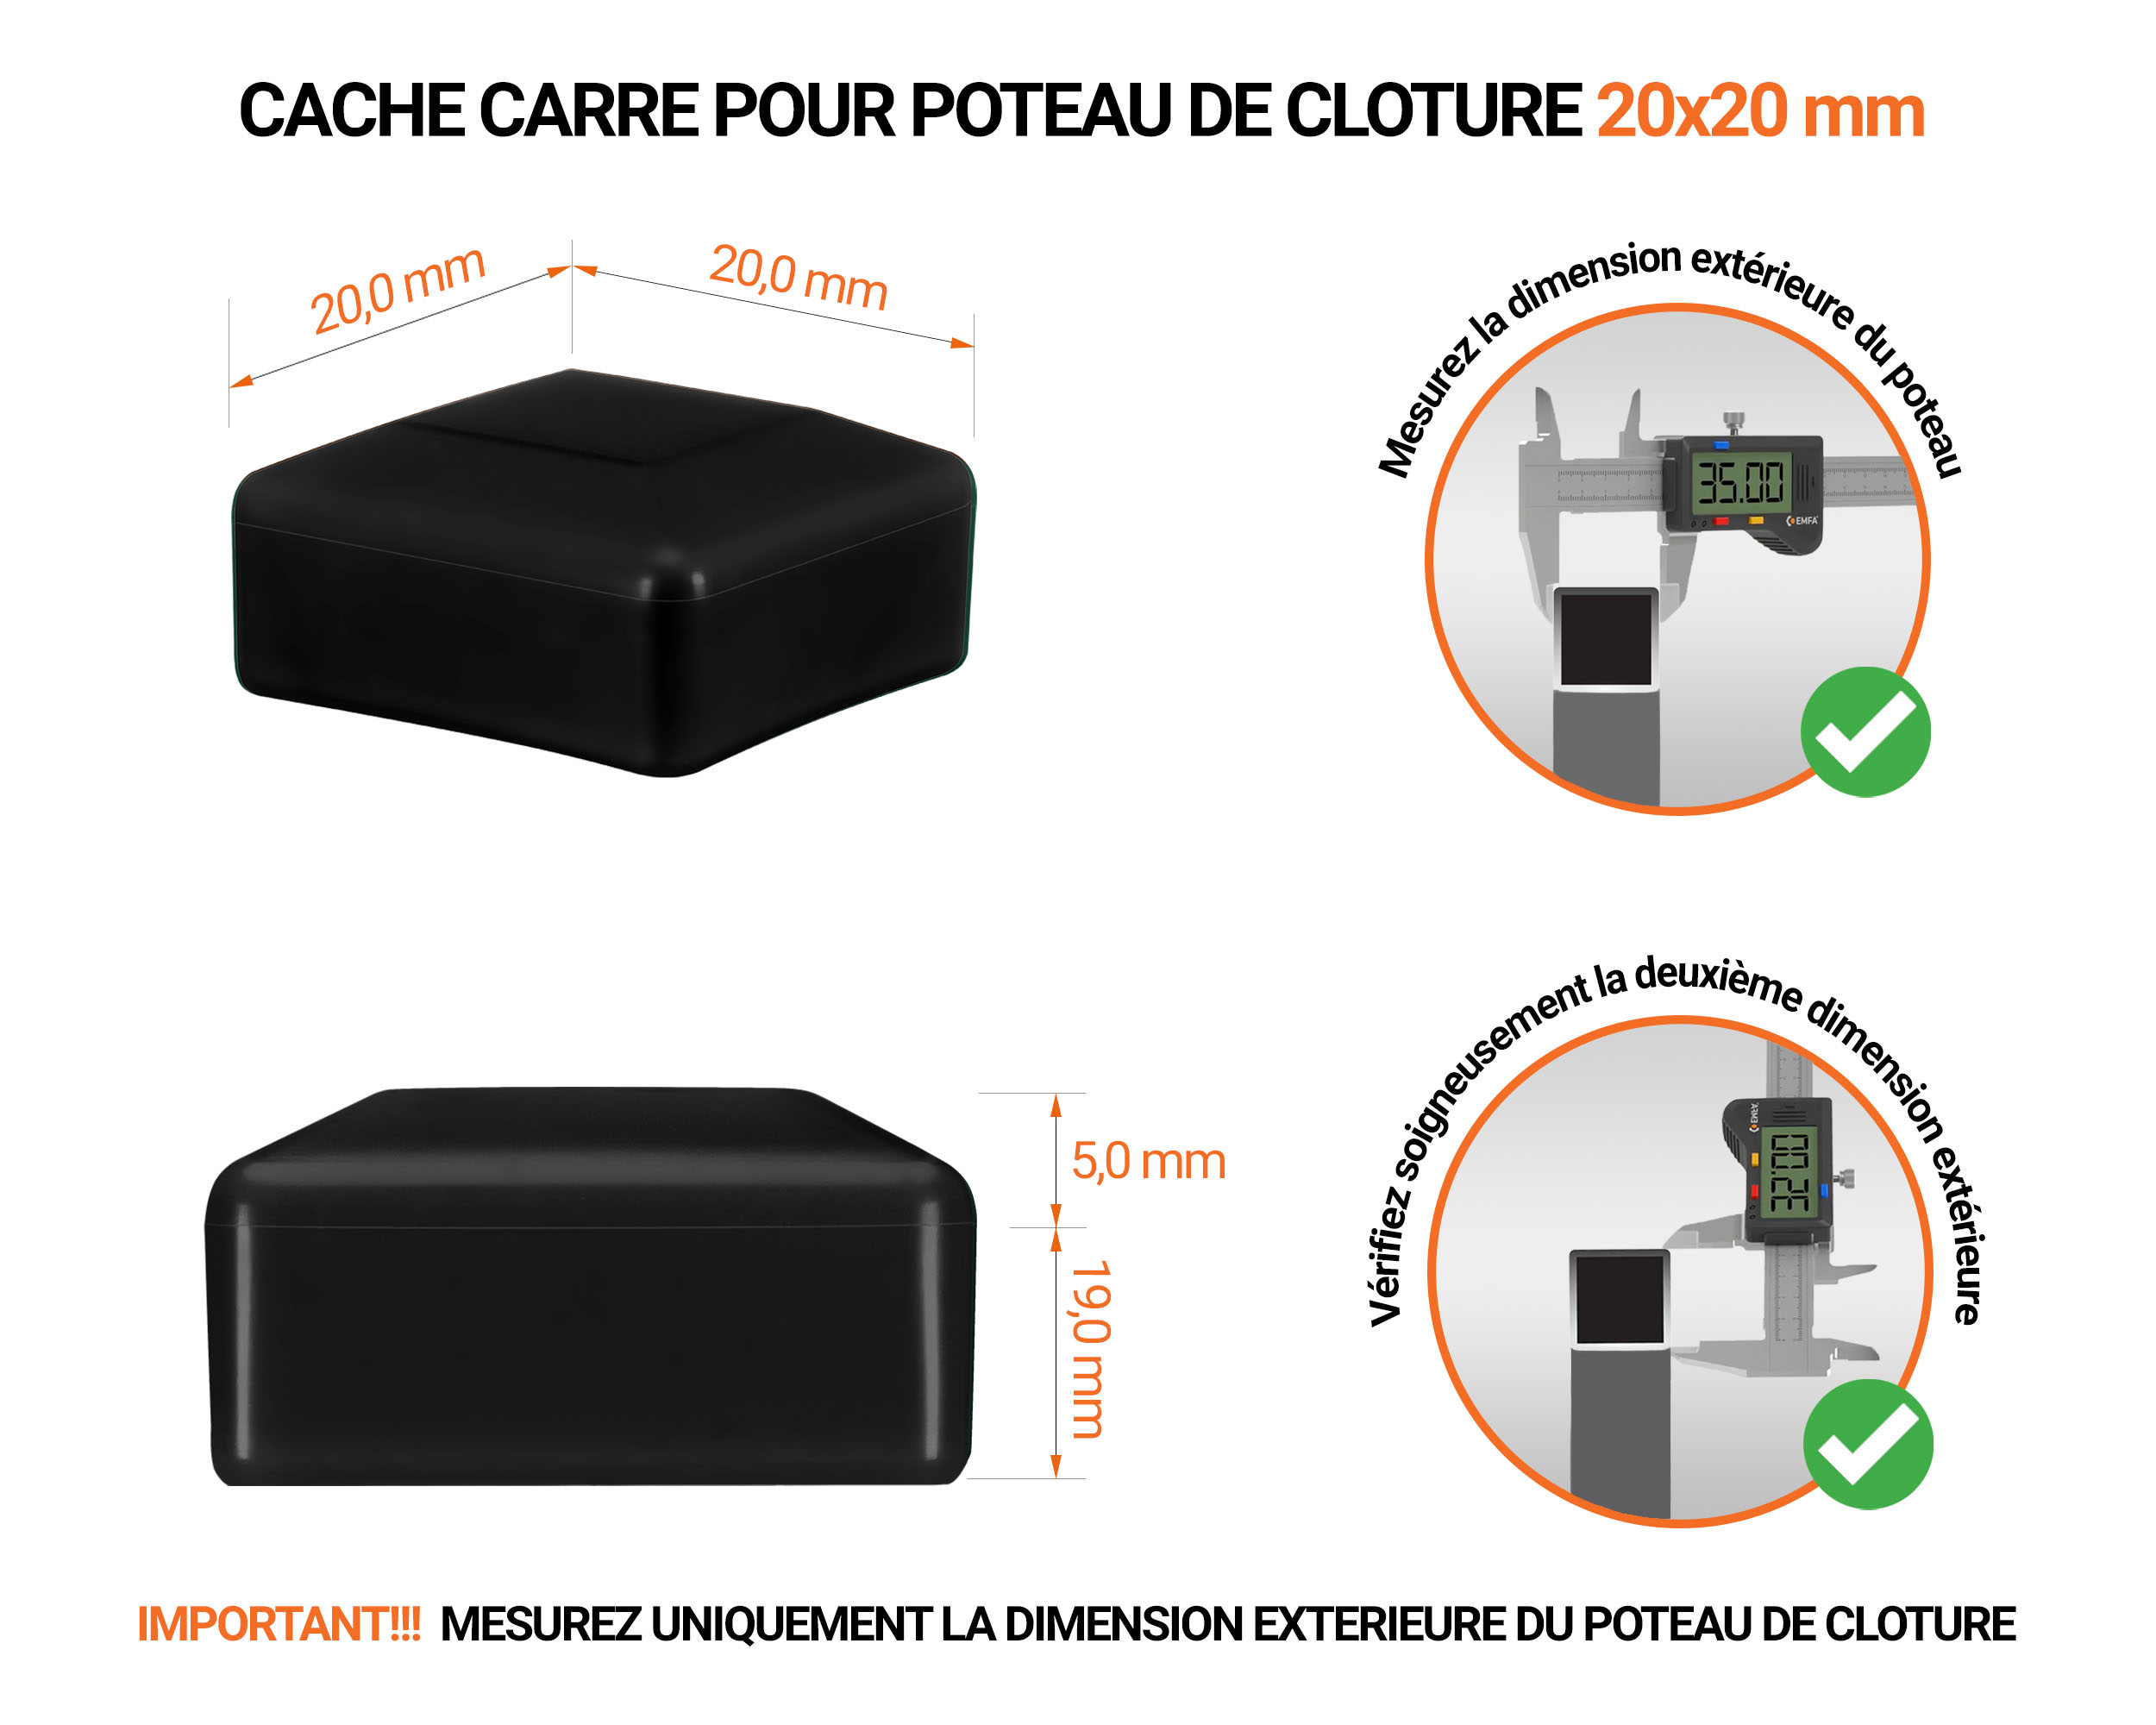 Capuchons pour poteaux carrés de couleur noir. Embout plastique pour des dimensions de poteaux de 20x20 mm avec dimensions et guide de mesure correcte du capuchon.